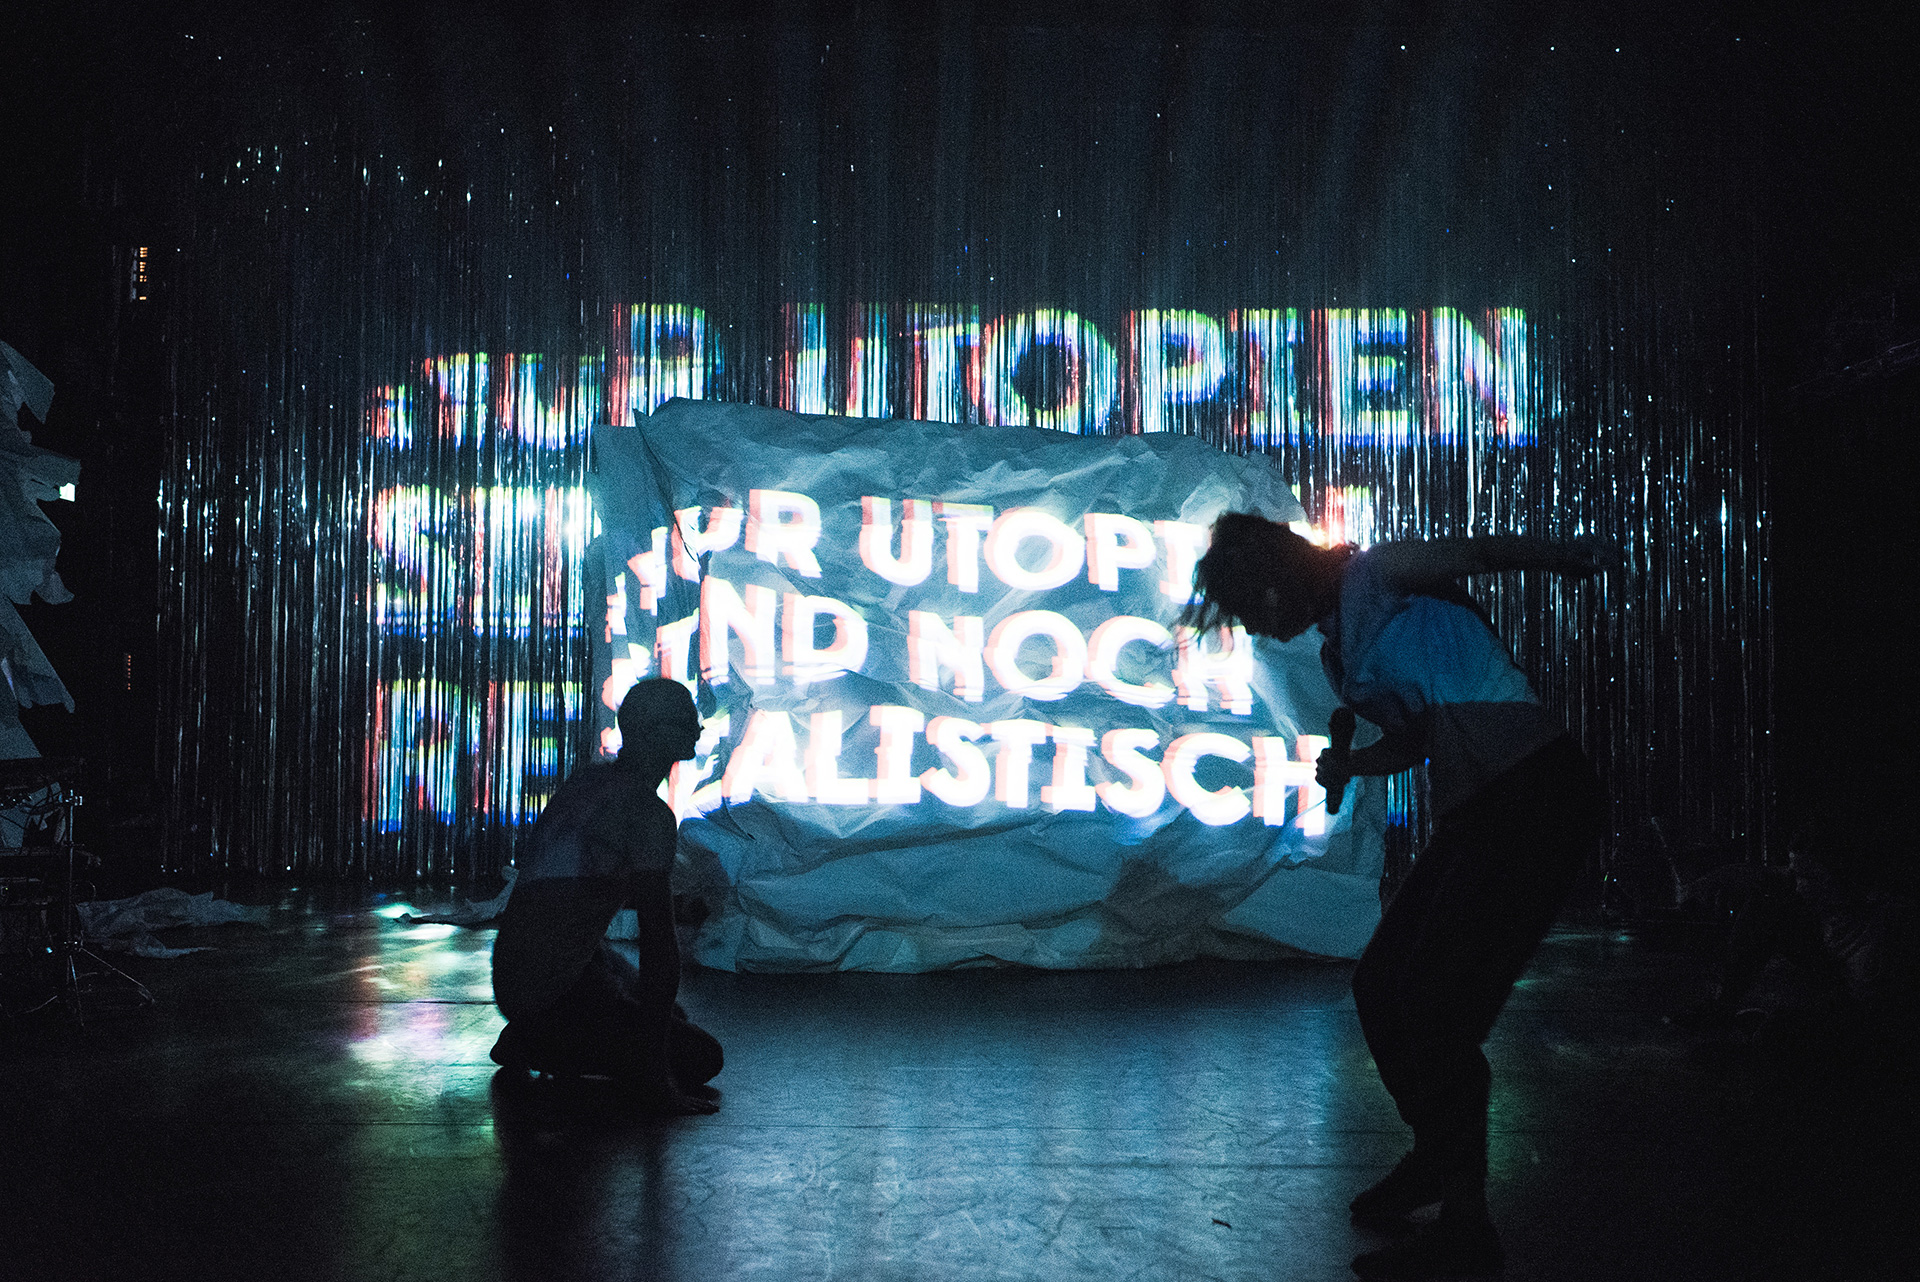 20170905-analogtheater-utopien-127